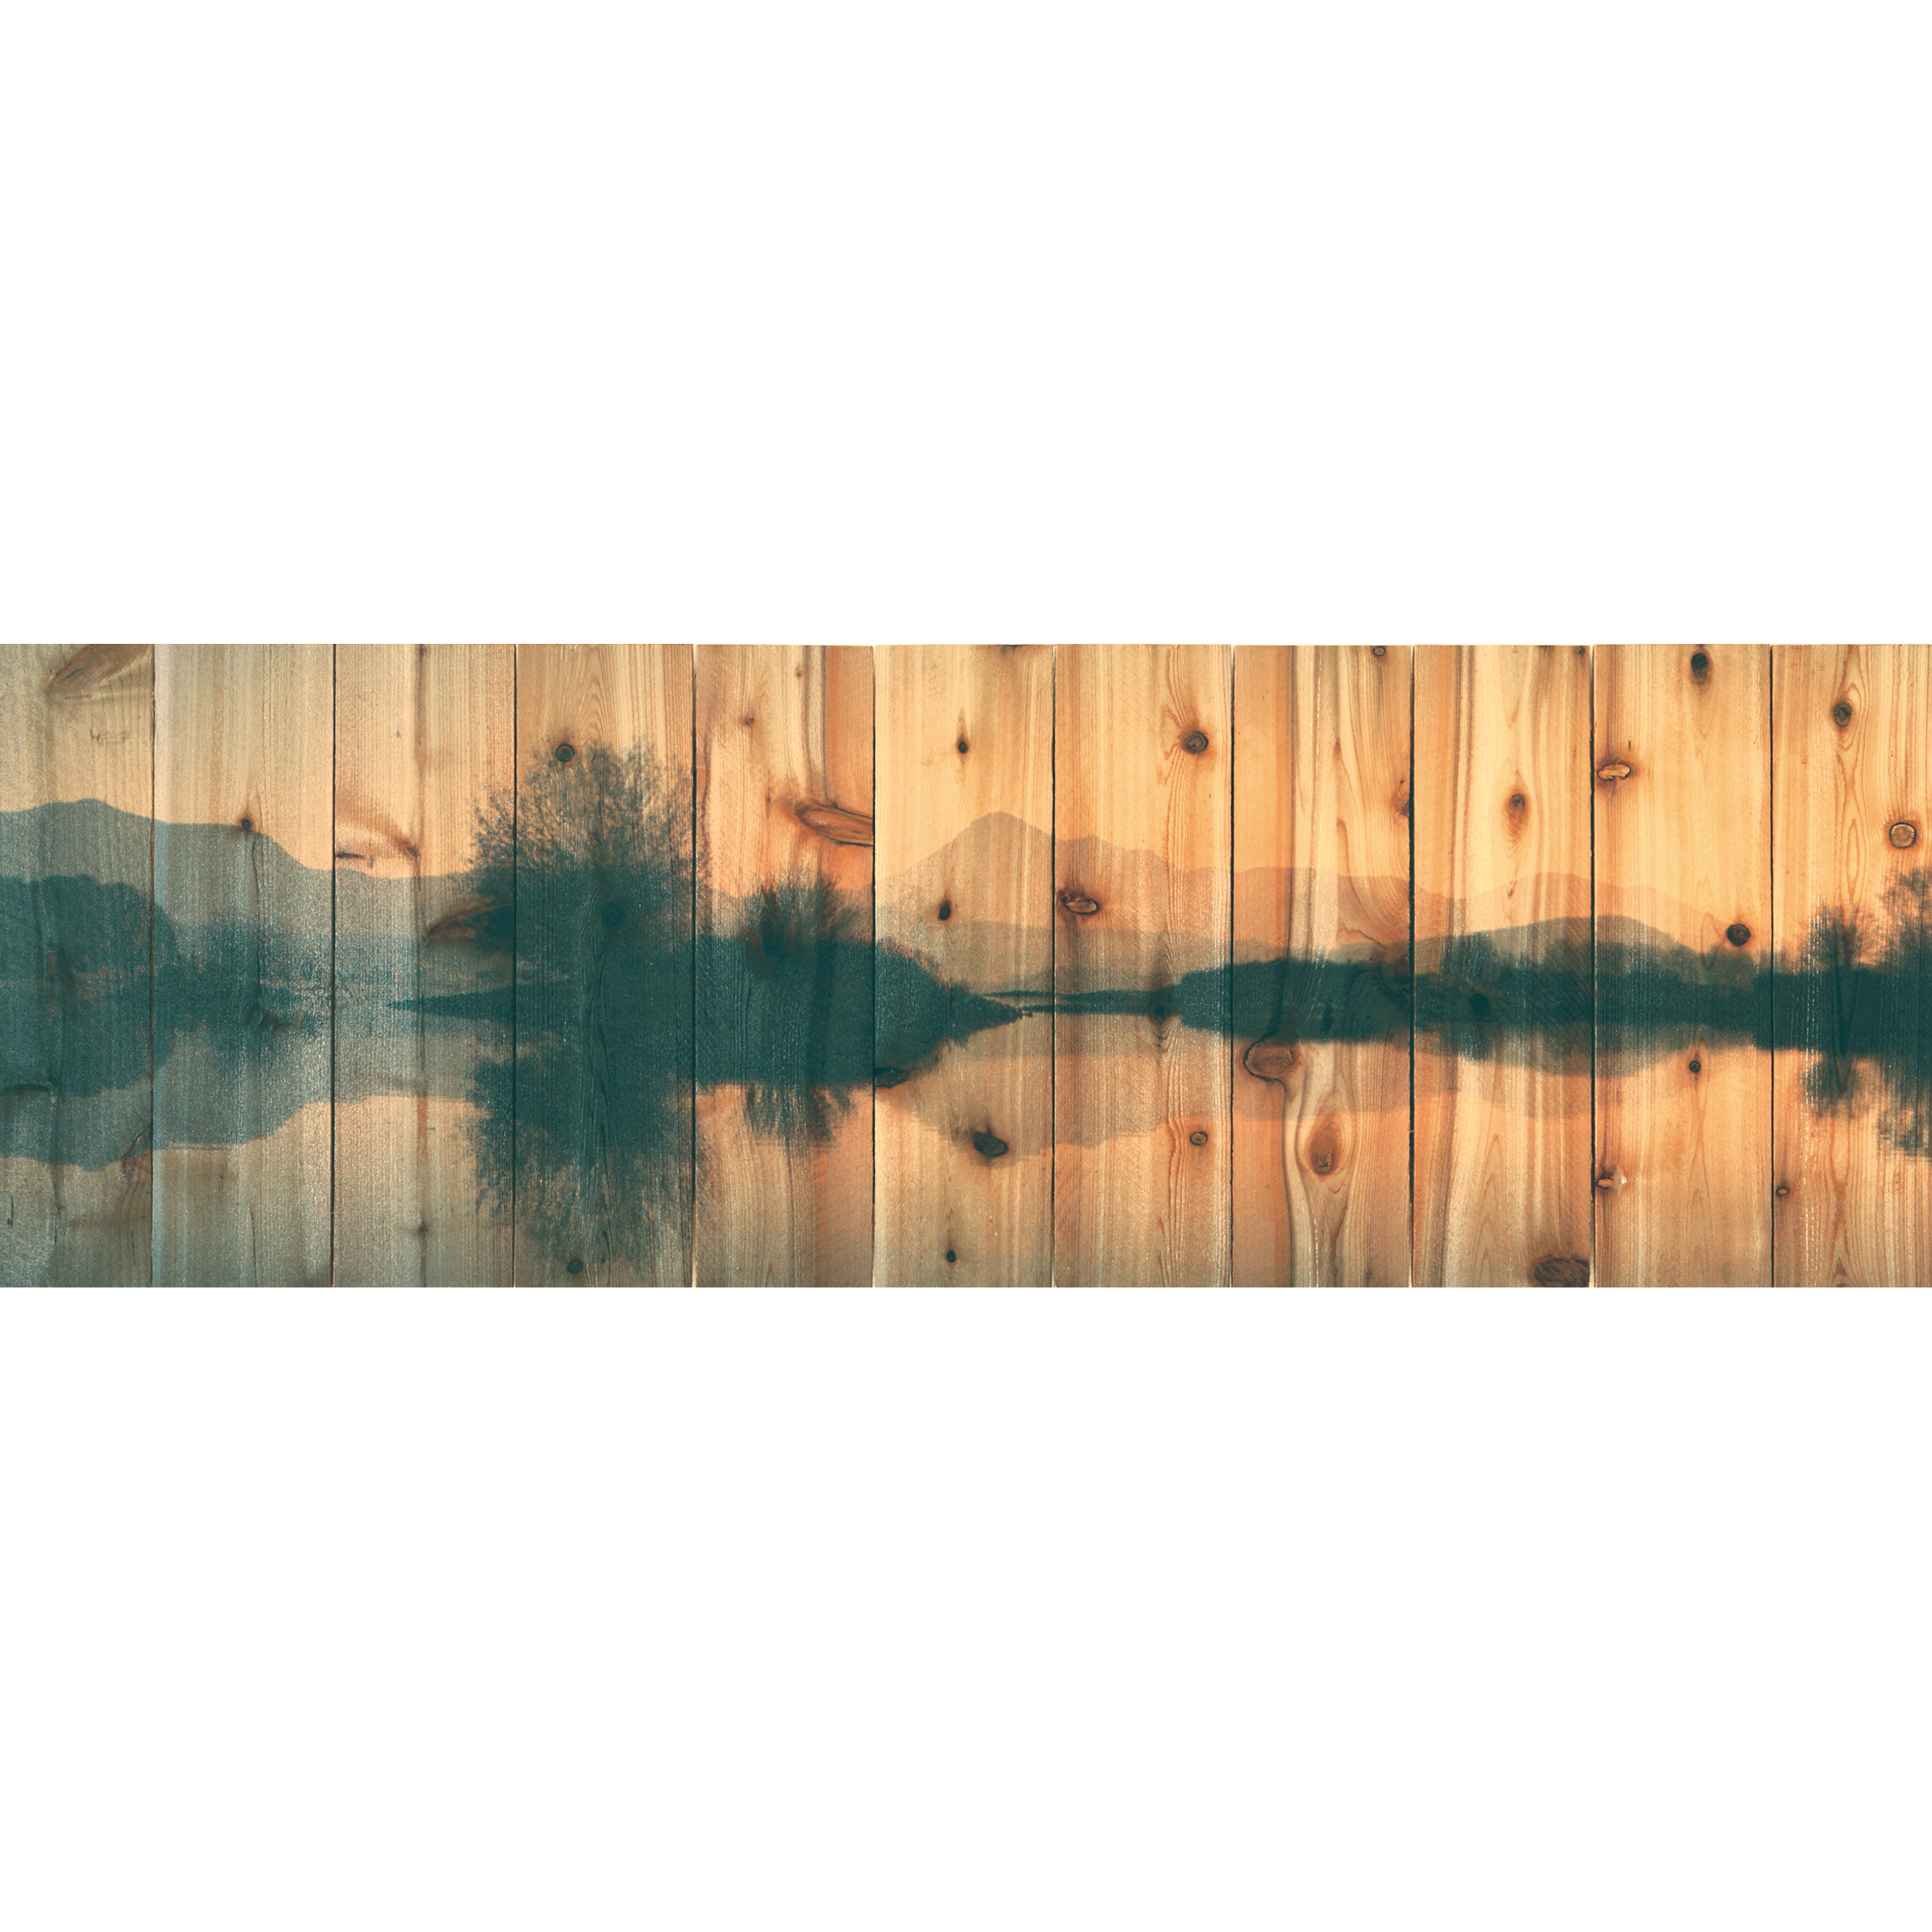 Daydream Gizaun Cedar Wall Art, Still Lake, 62" X 20"